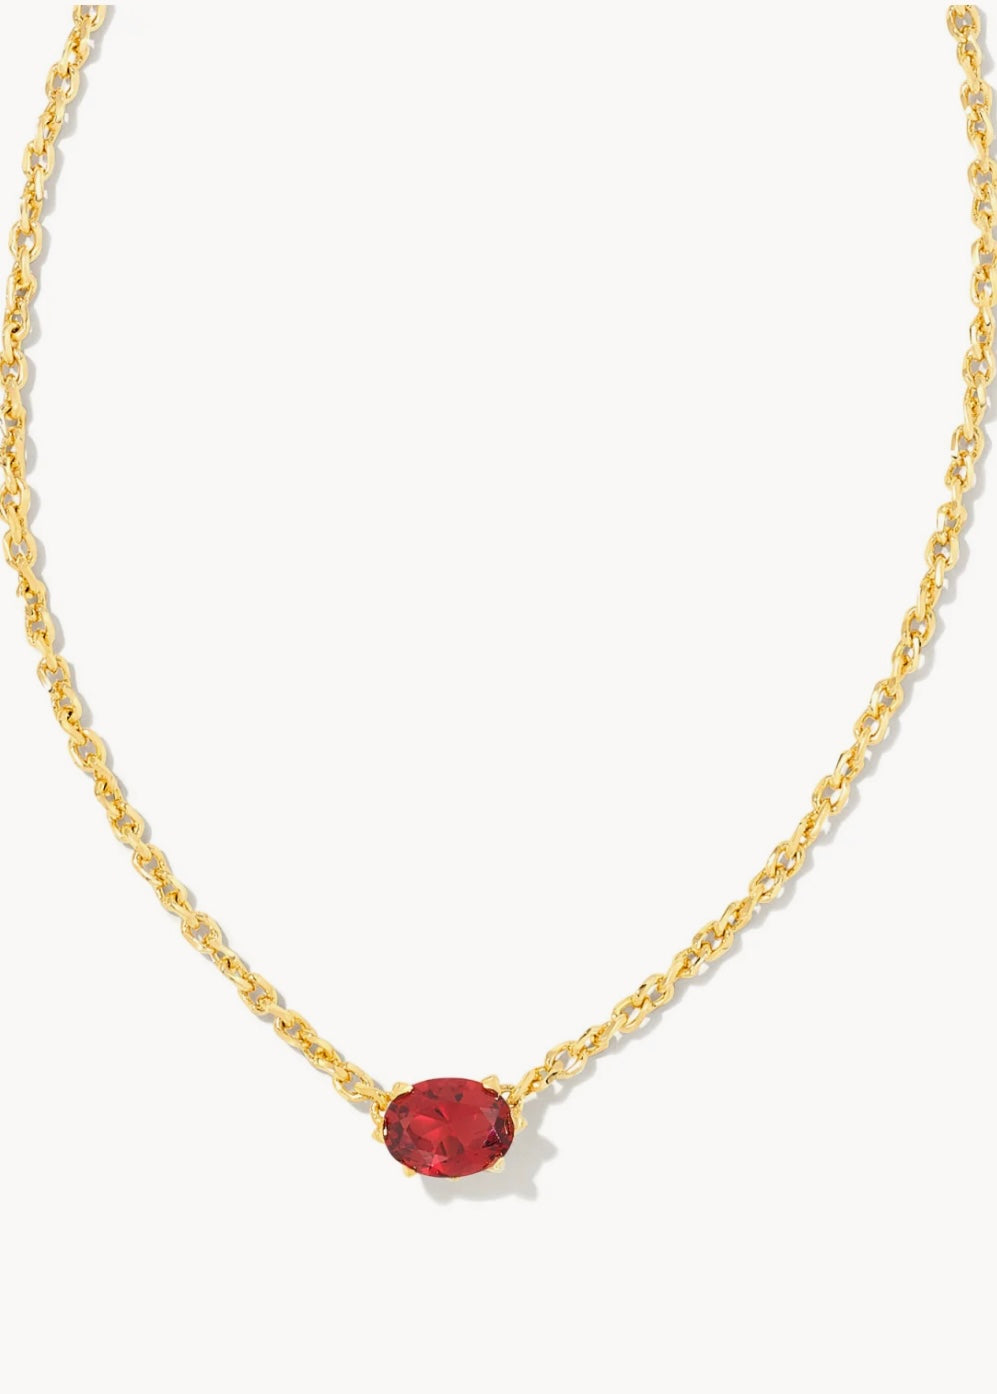 Abbie Herringbone Necklace in Gold | Kendra Scott